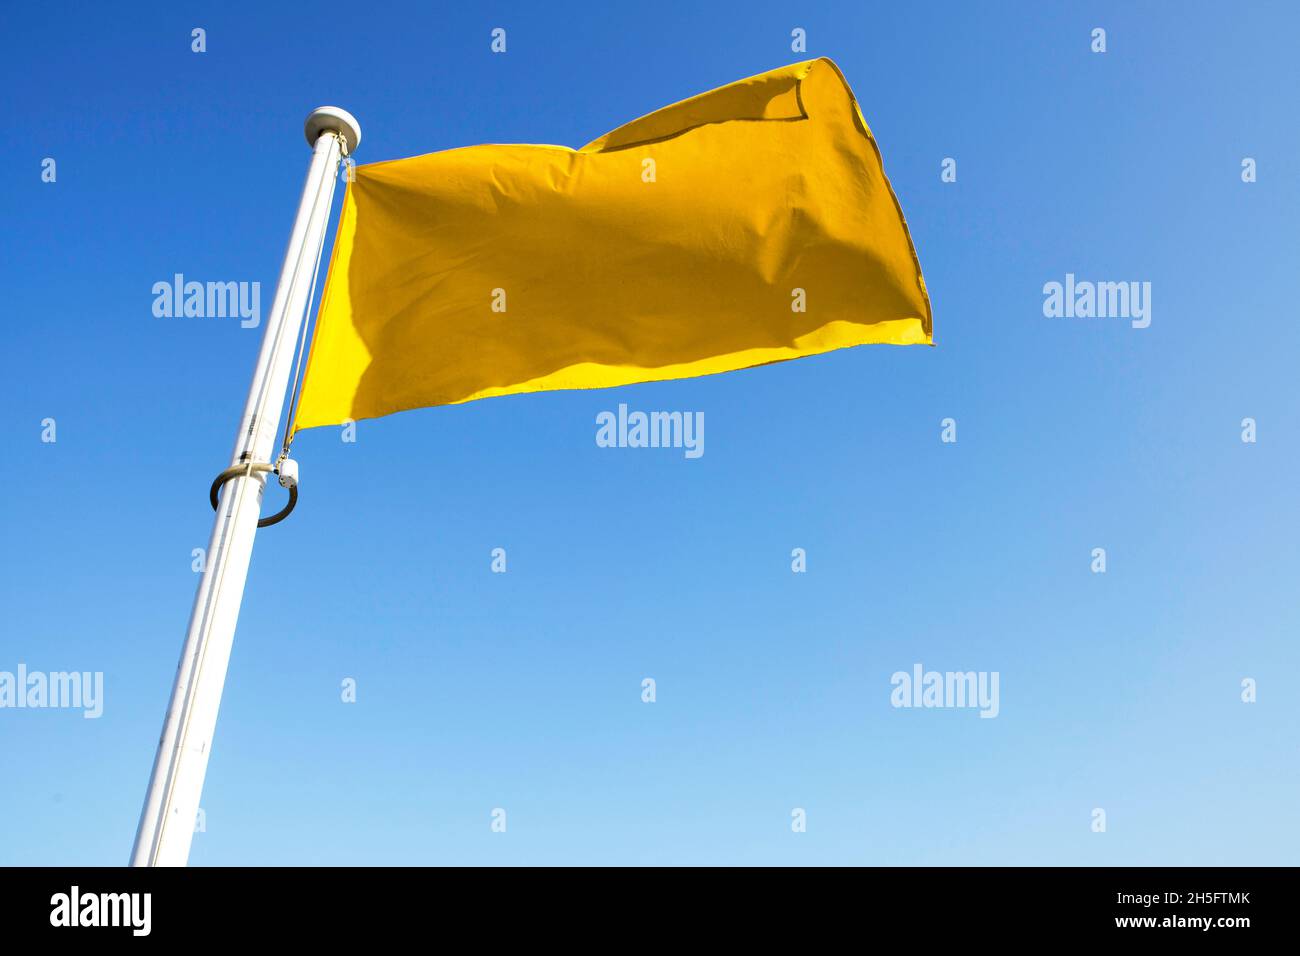 Gelbe Flagge / Fahne, befestigt an einem weißen Masten, weht im Wind vor einem blauen Himmel. Cannes, Frankreich. Stock Photo